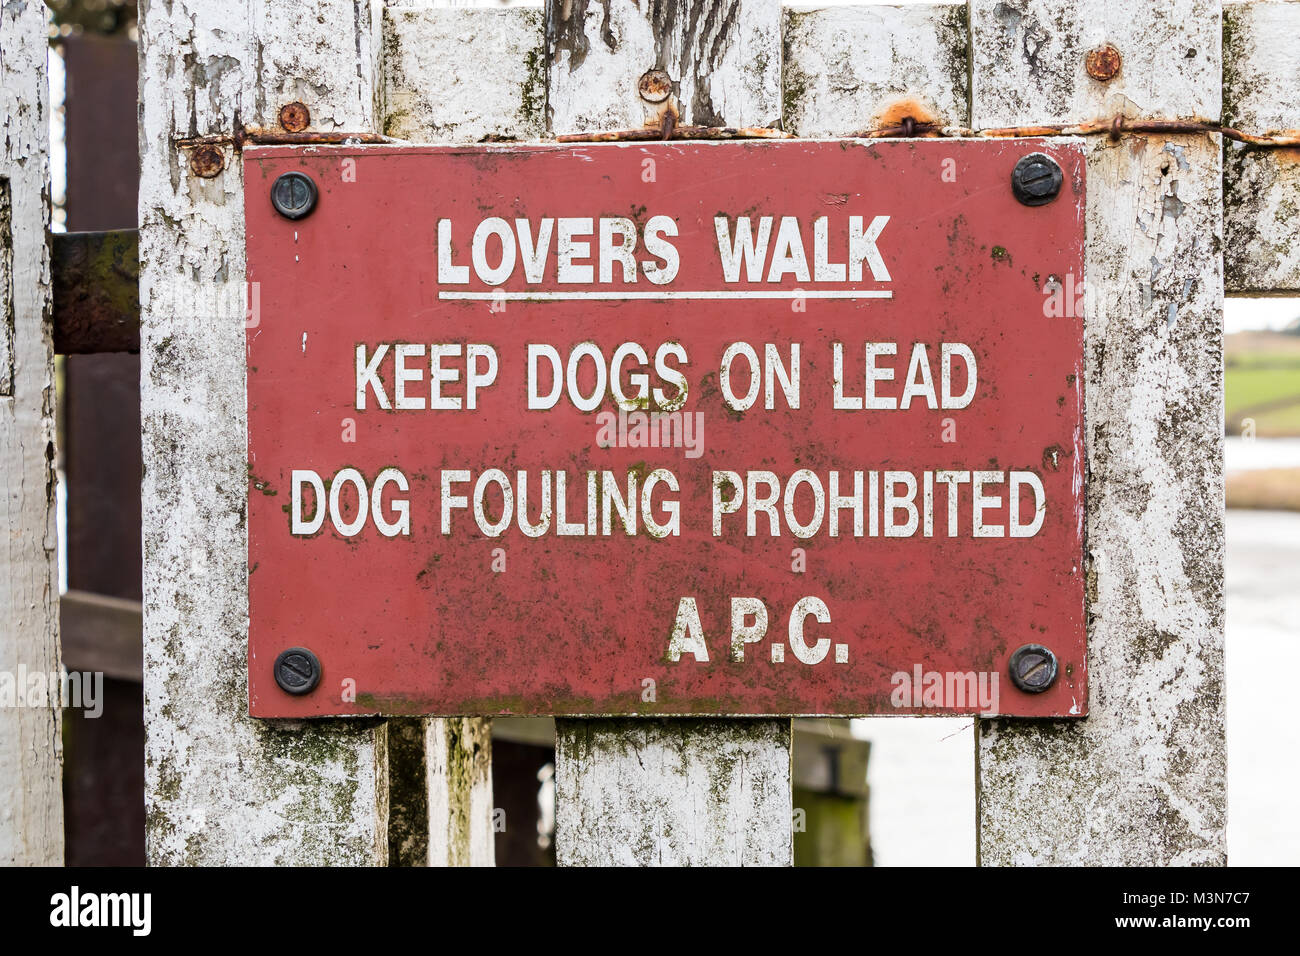 Avviso sul gateway verso il sentiero denominato 'Lovers Walk' istruire le persone a tenere i cani al guinzaglio e che il cane formazione di incrostazioni è vietata Foto Stock